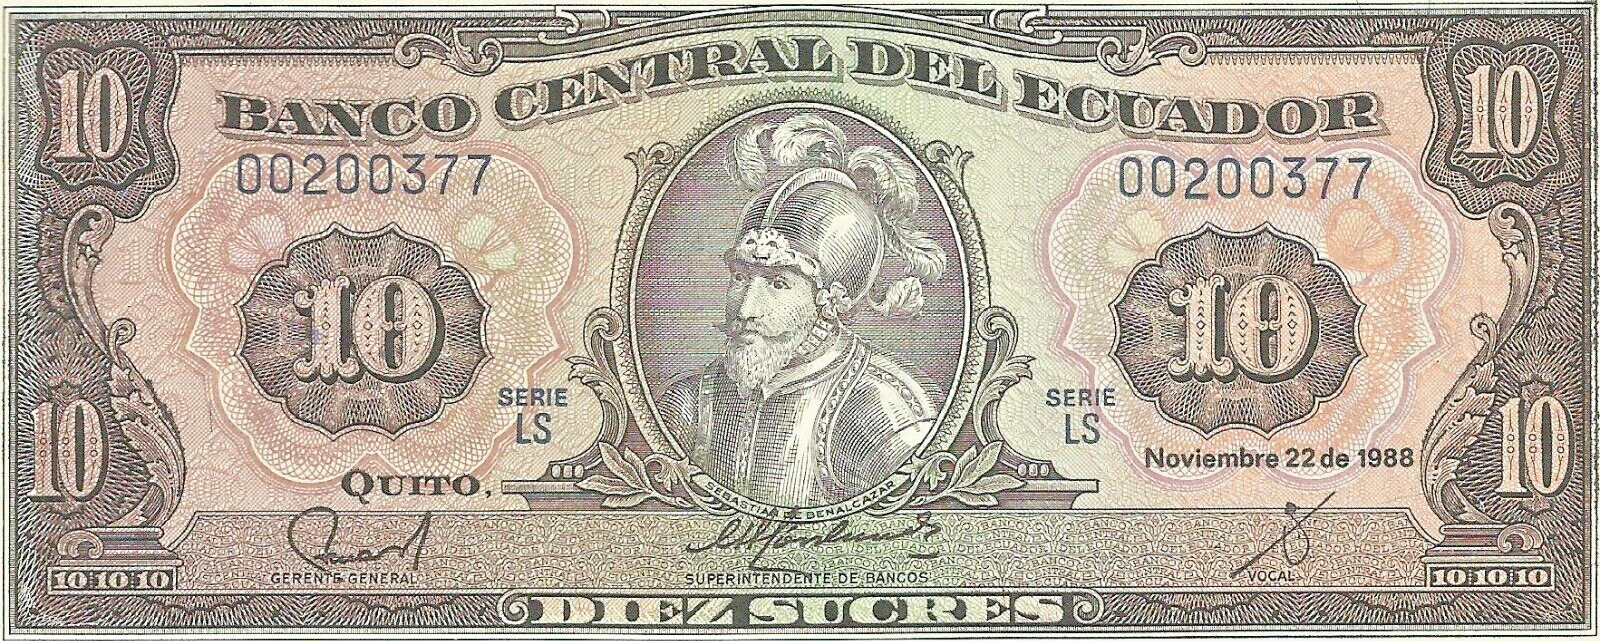 BANCO CENTRAL DEL ECUADOR  Diez Sucres 1988 UNC, Banknote # 19